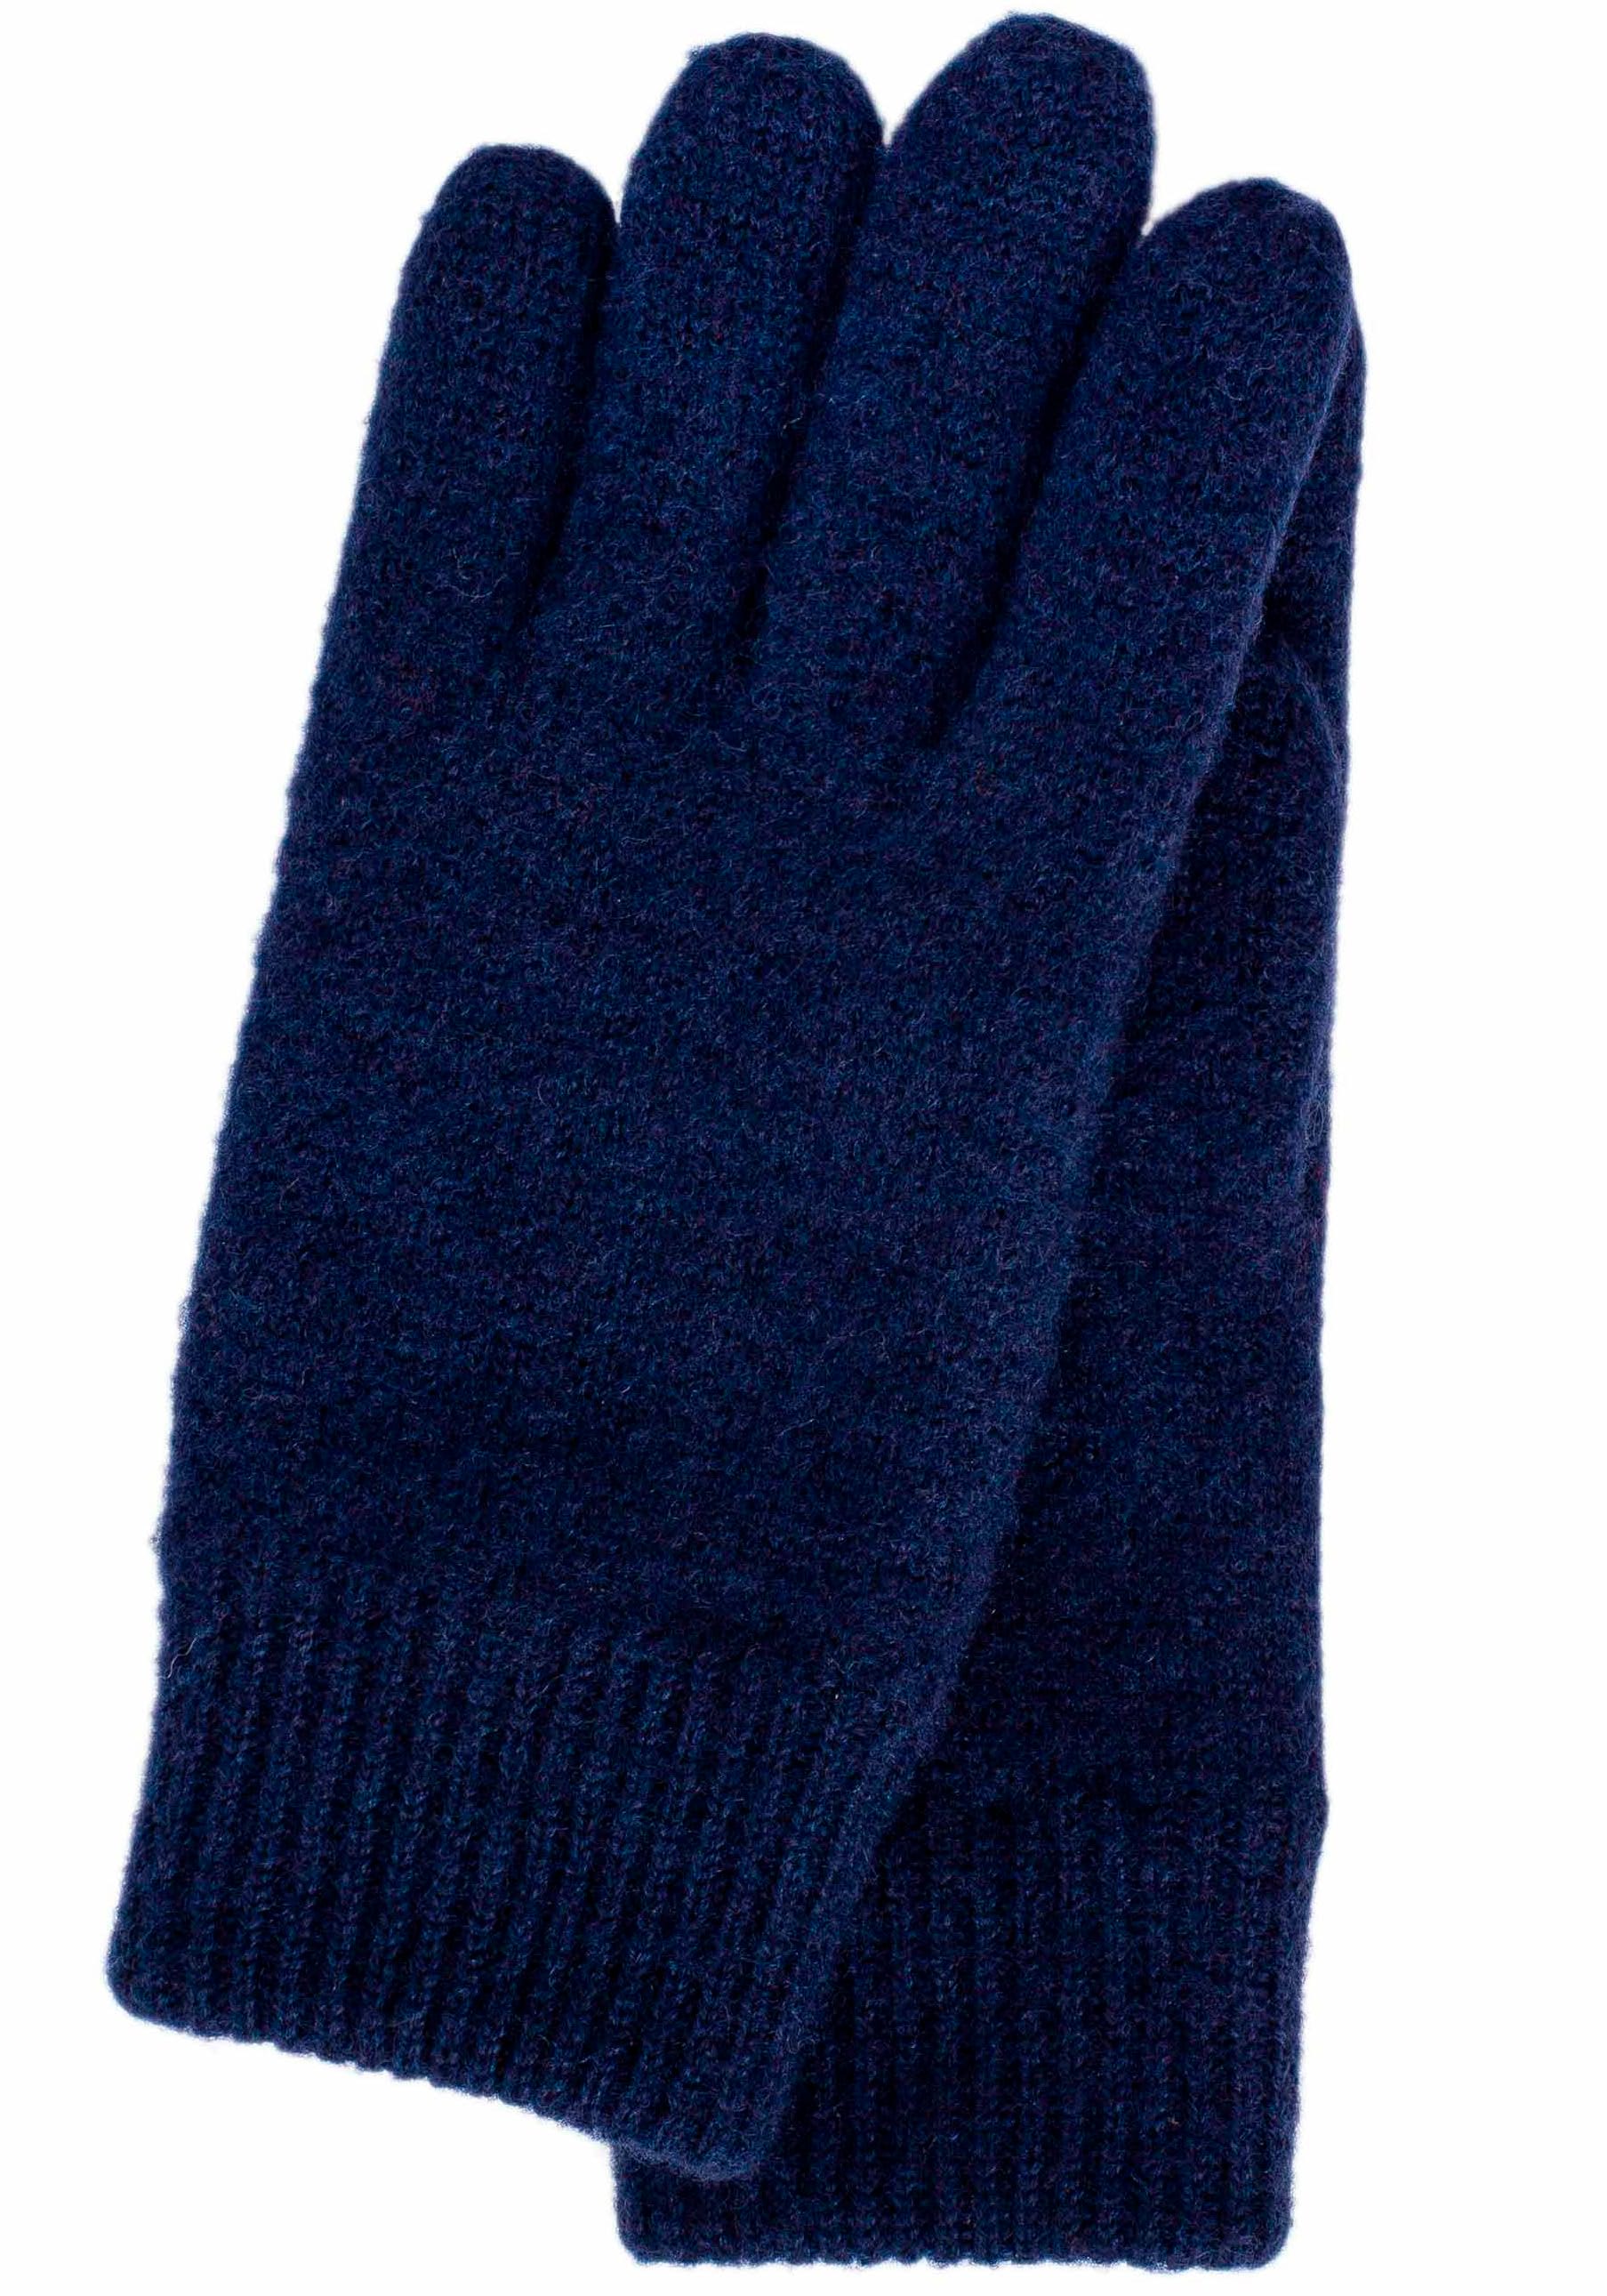 Mindestbestellwert Handschuhe bestellen ➤ ohne